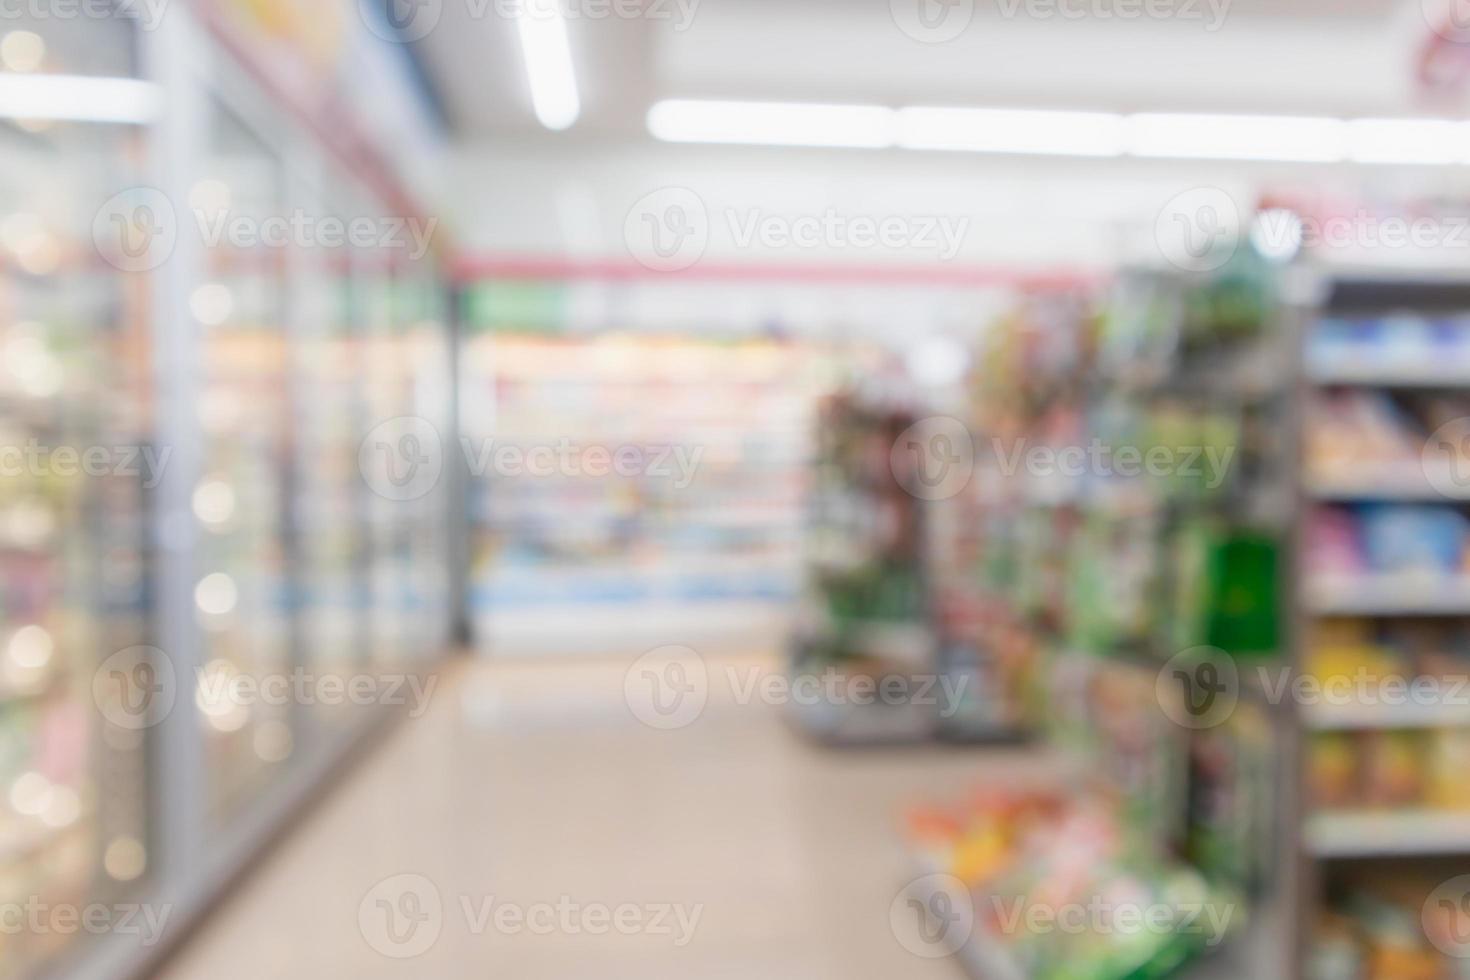 abstrait flou supermarché dépanneur réfrigérateur allée et étagères de produits intérieur arrière-plan défocalisé photo